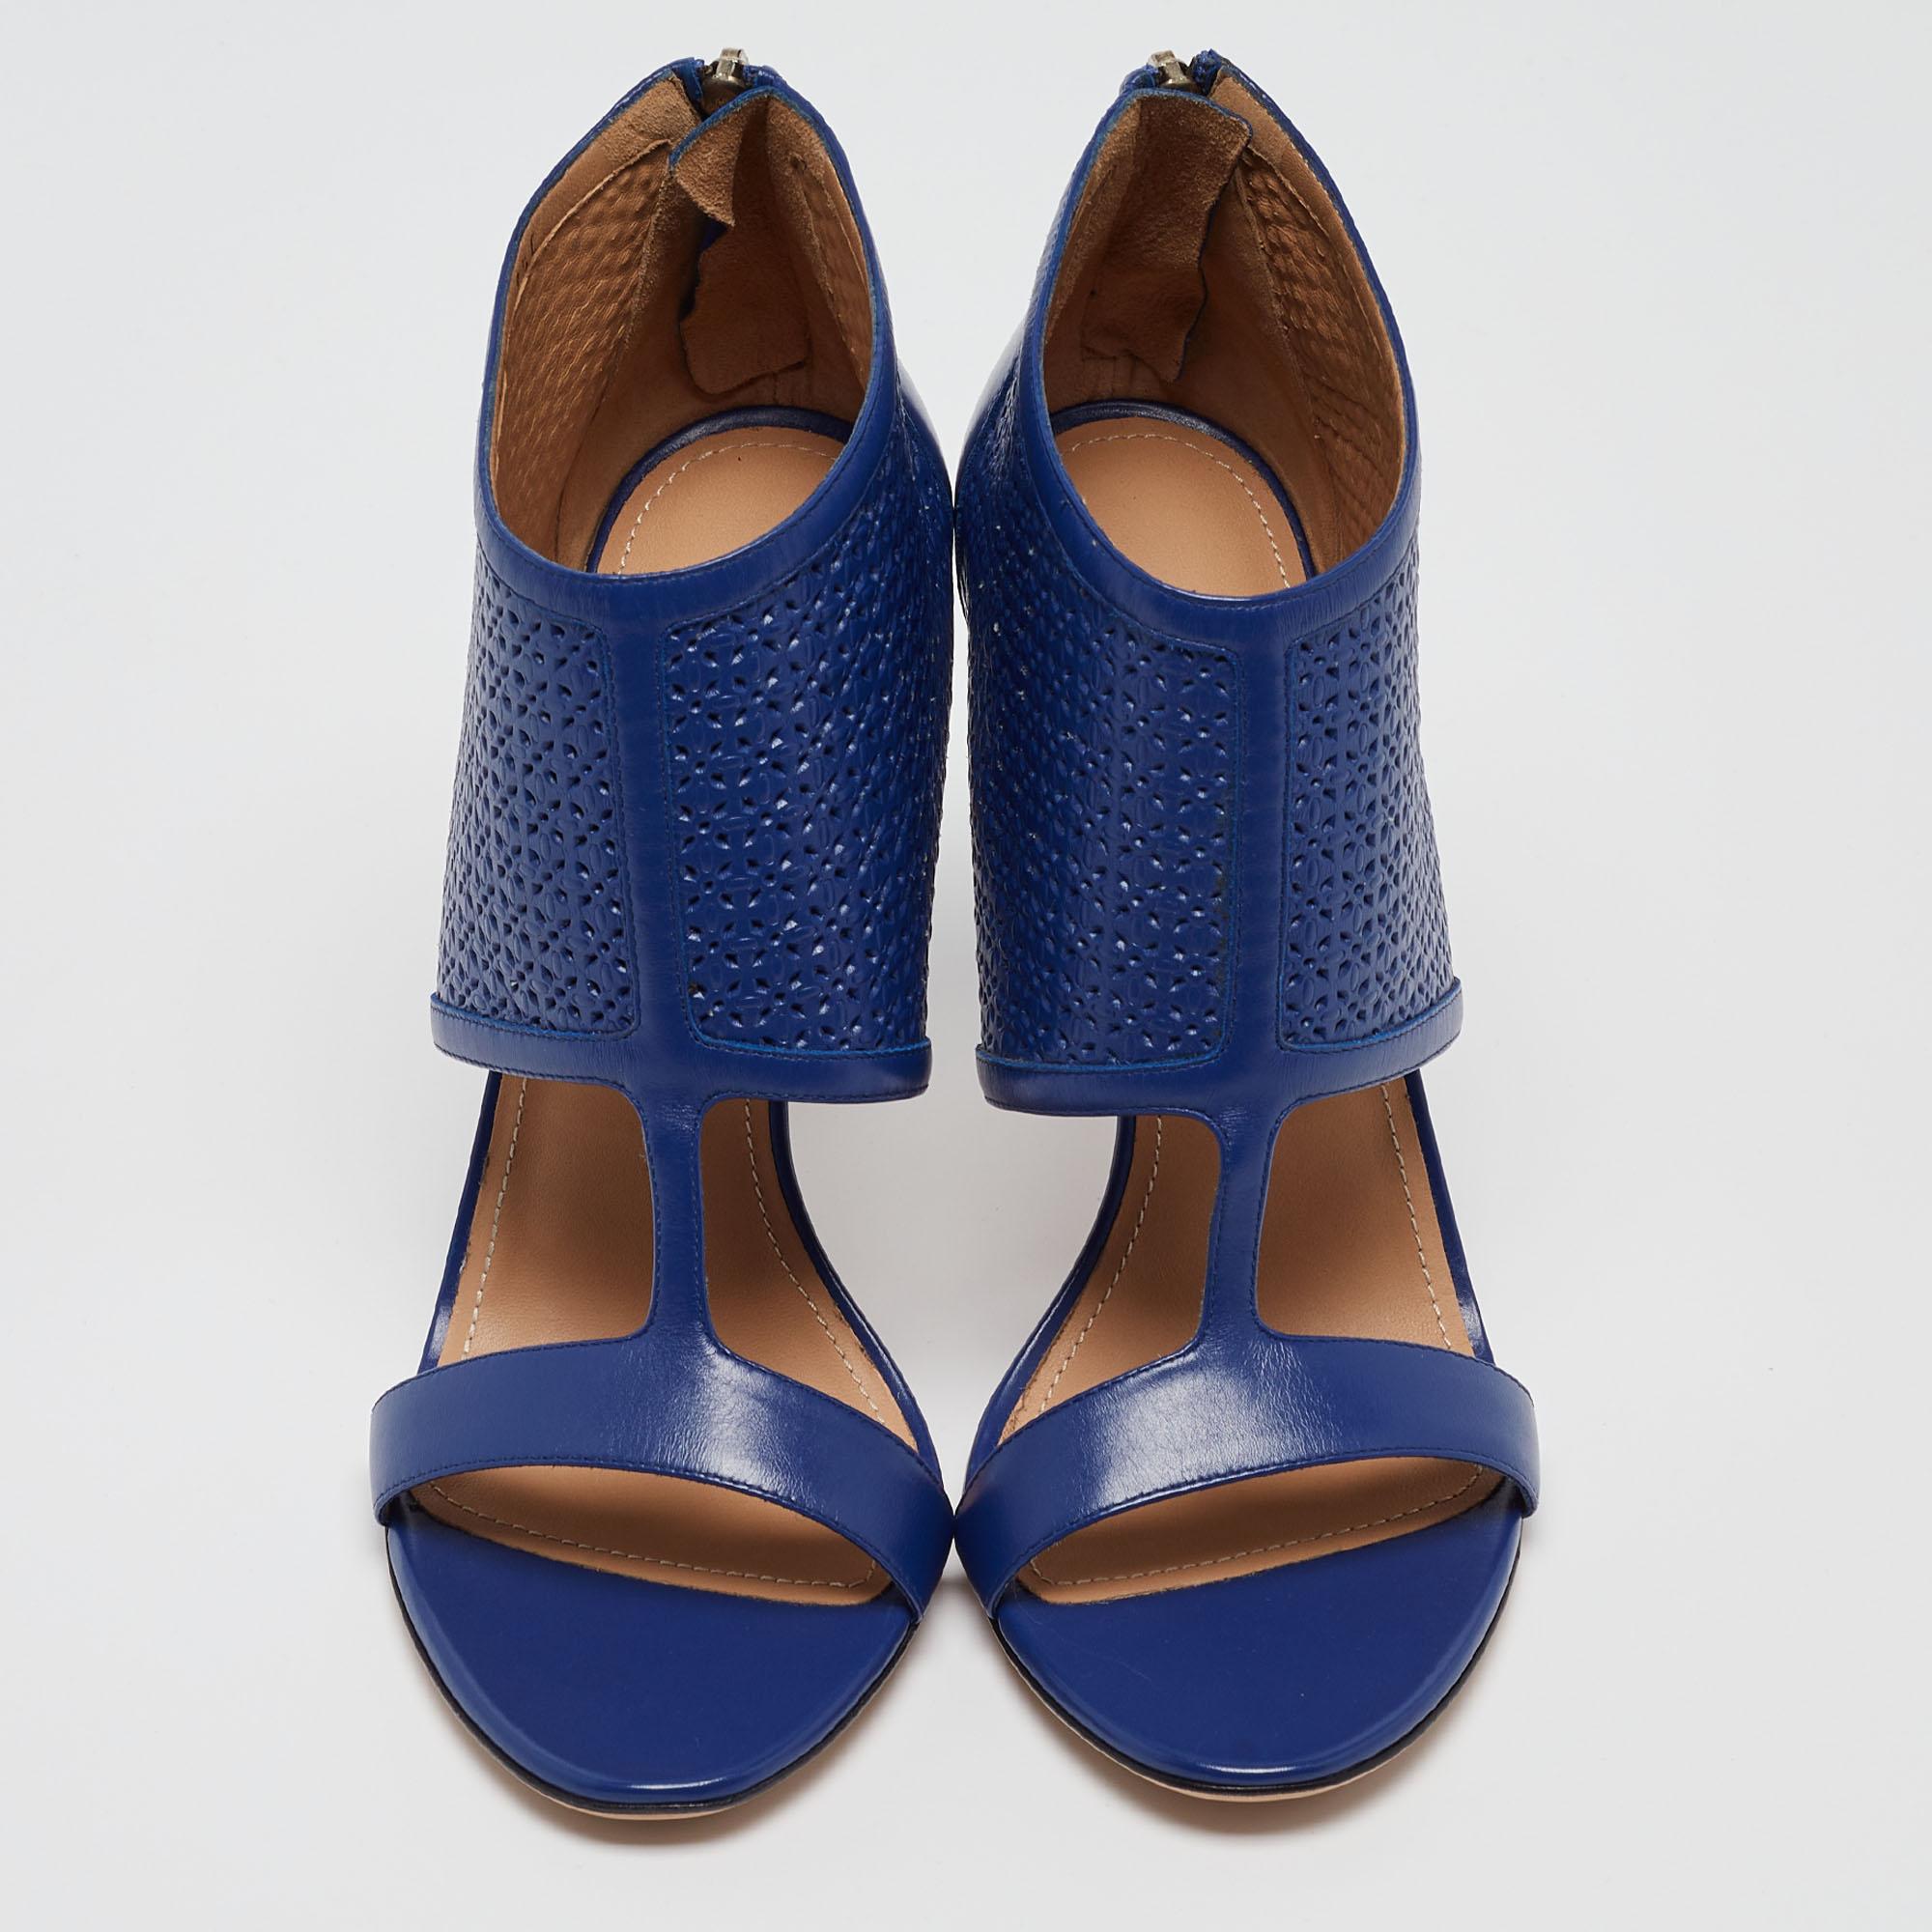 Les chaussures Pacella en cuir perforé bleu de Salvatore Ferragamo exsudent le chic féminin avec un style avant-gardiste. Ces bottines à bout ouvert sont dotées d'une fermeture à glissière argentée à l'arrière des orteils pour un ajustement